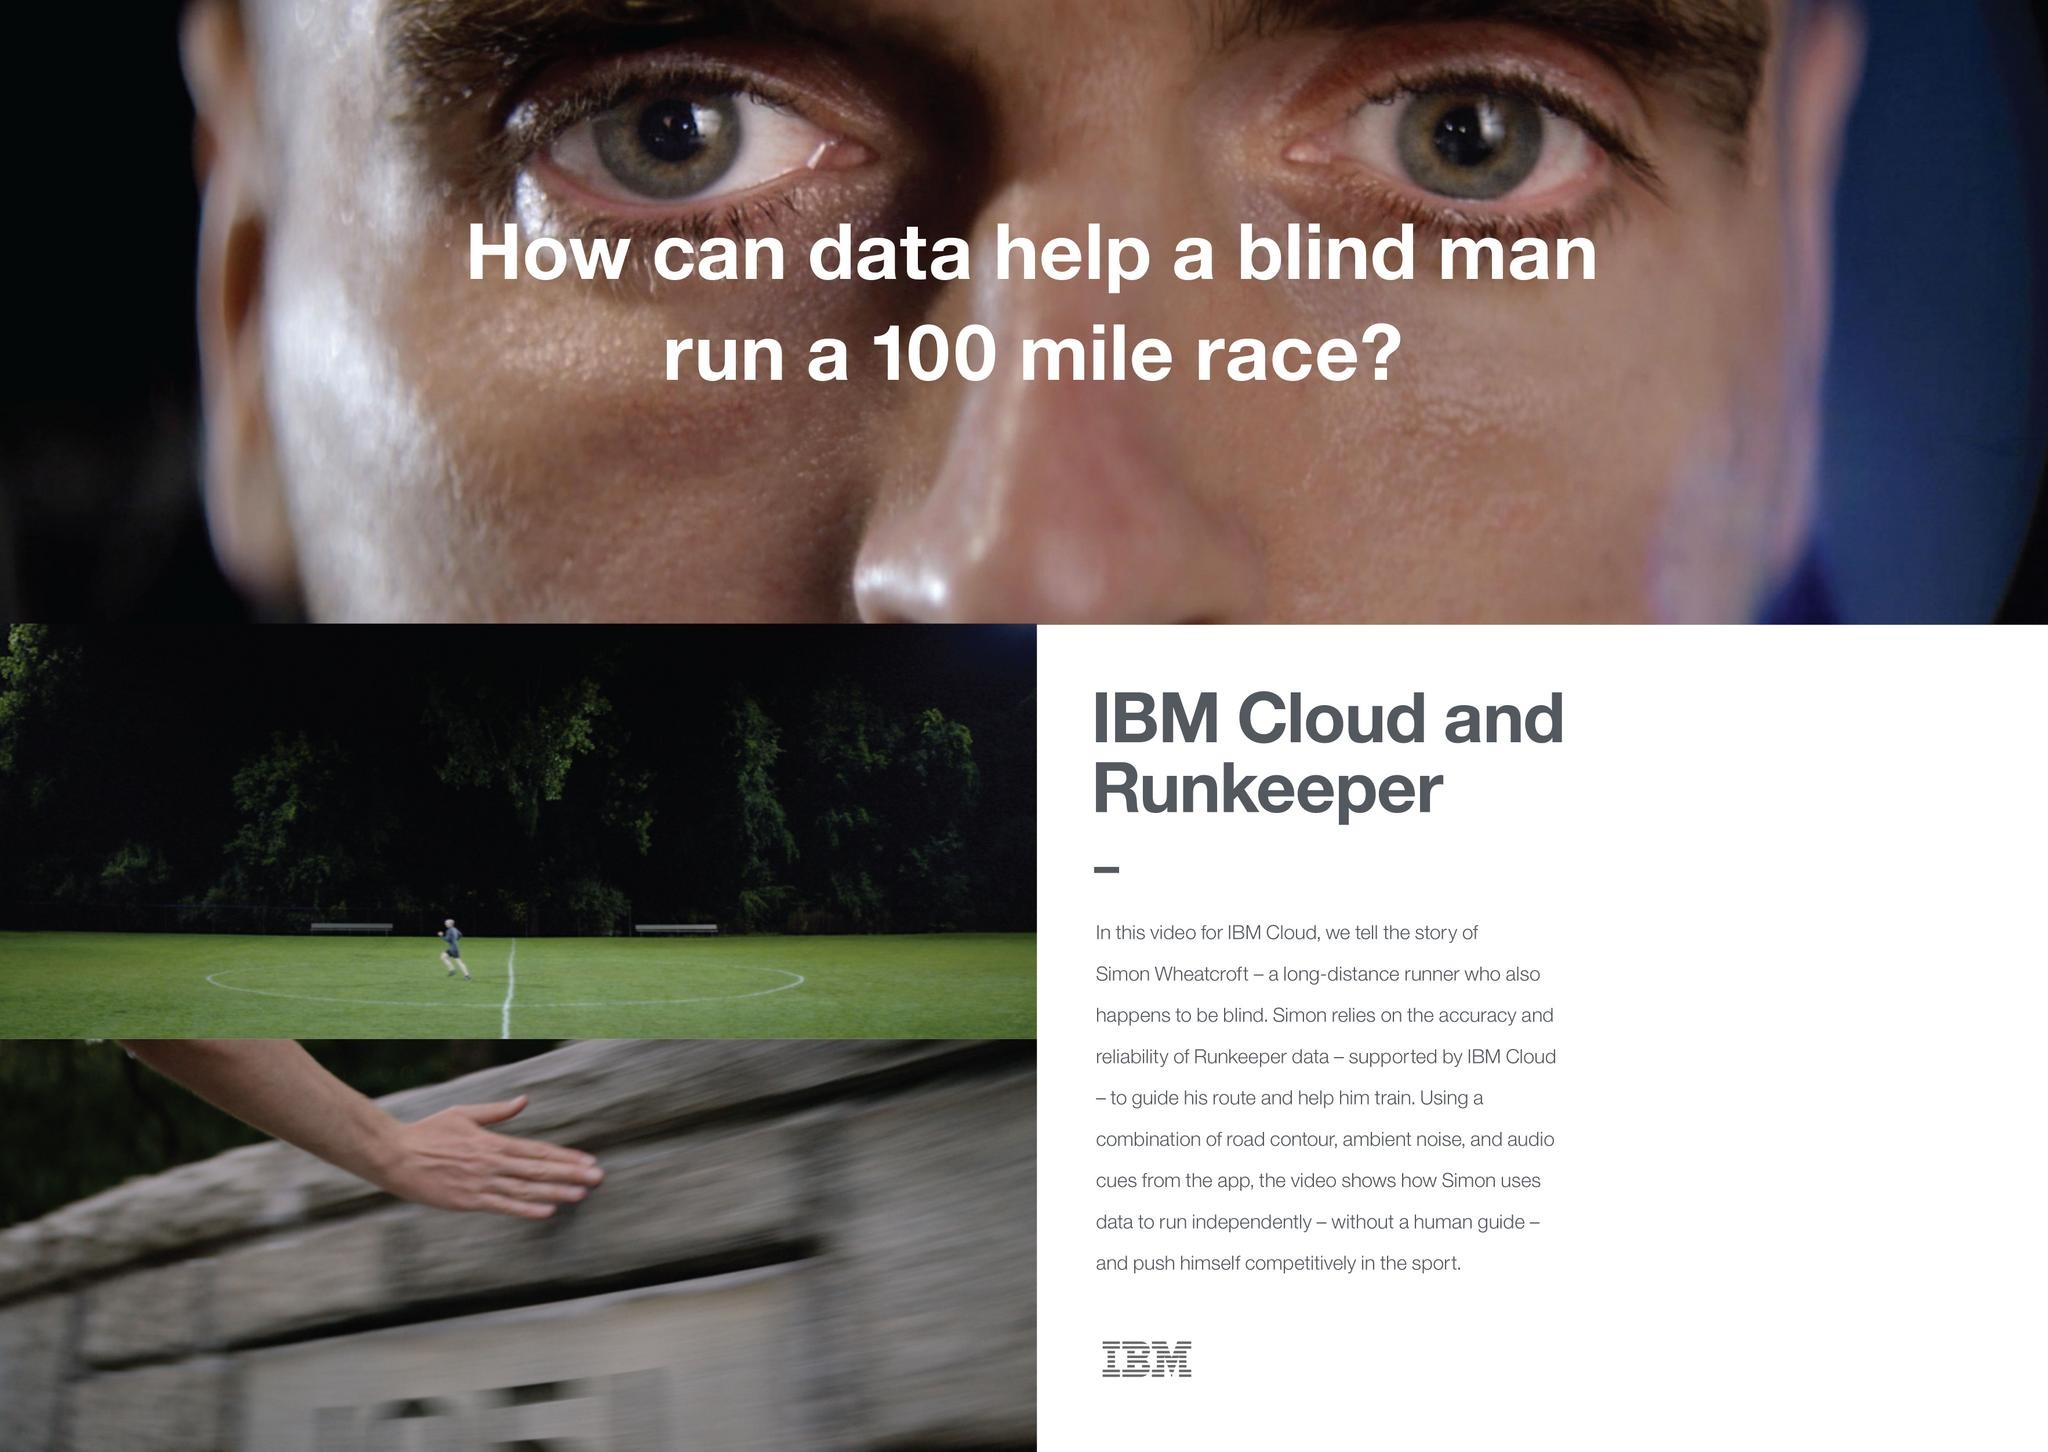 IBM Cloud Hero: Runkeeper